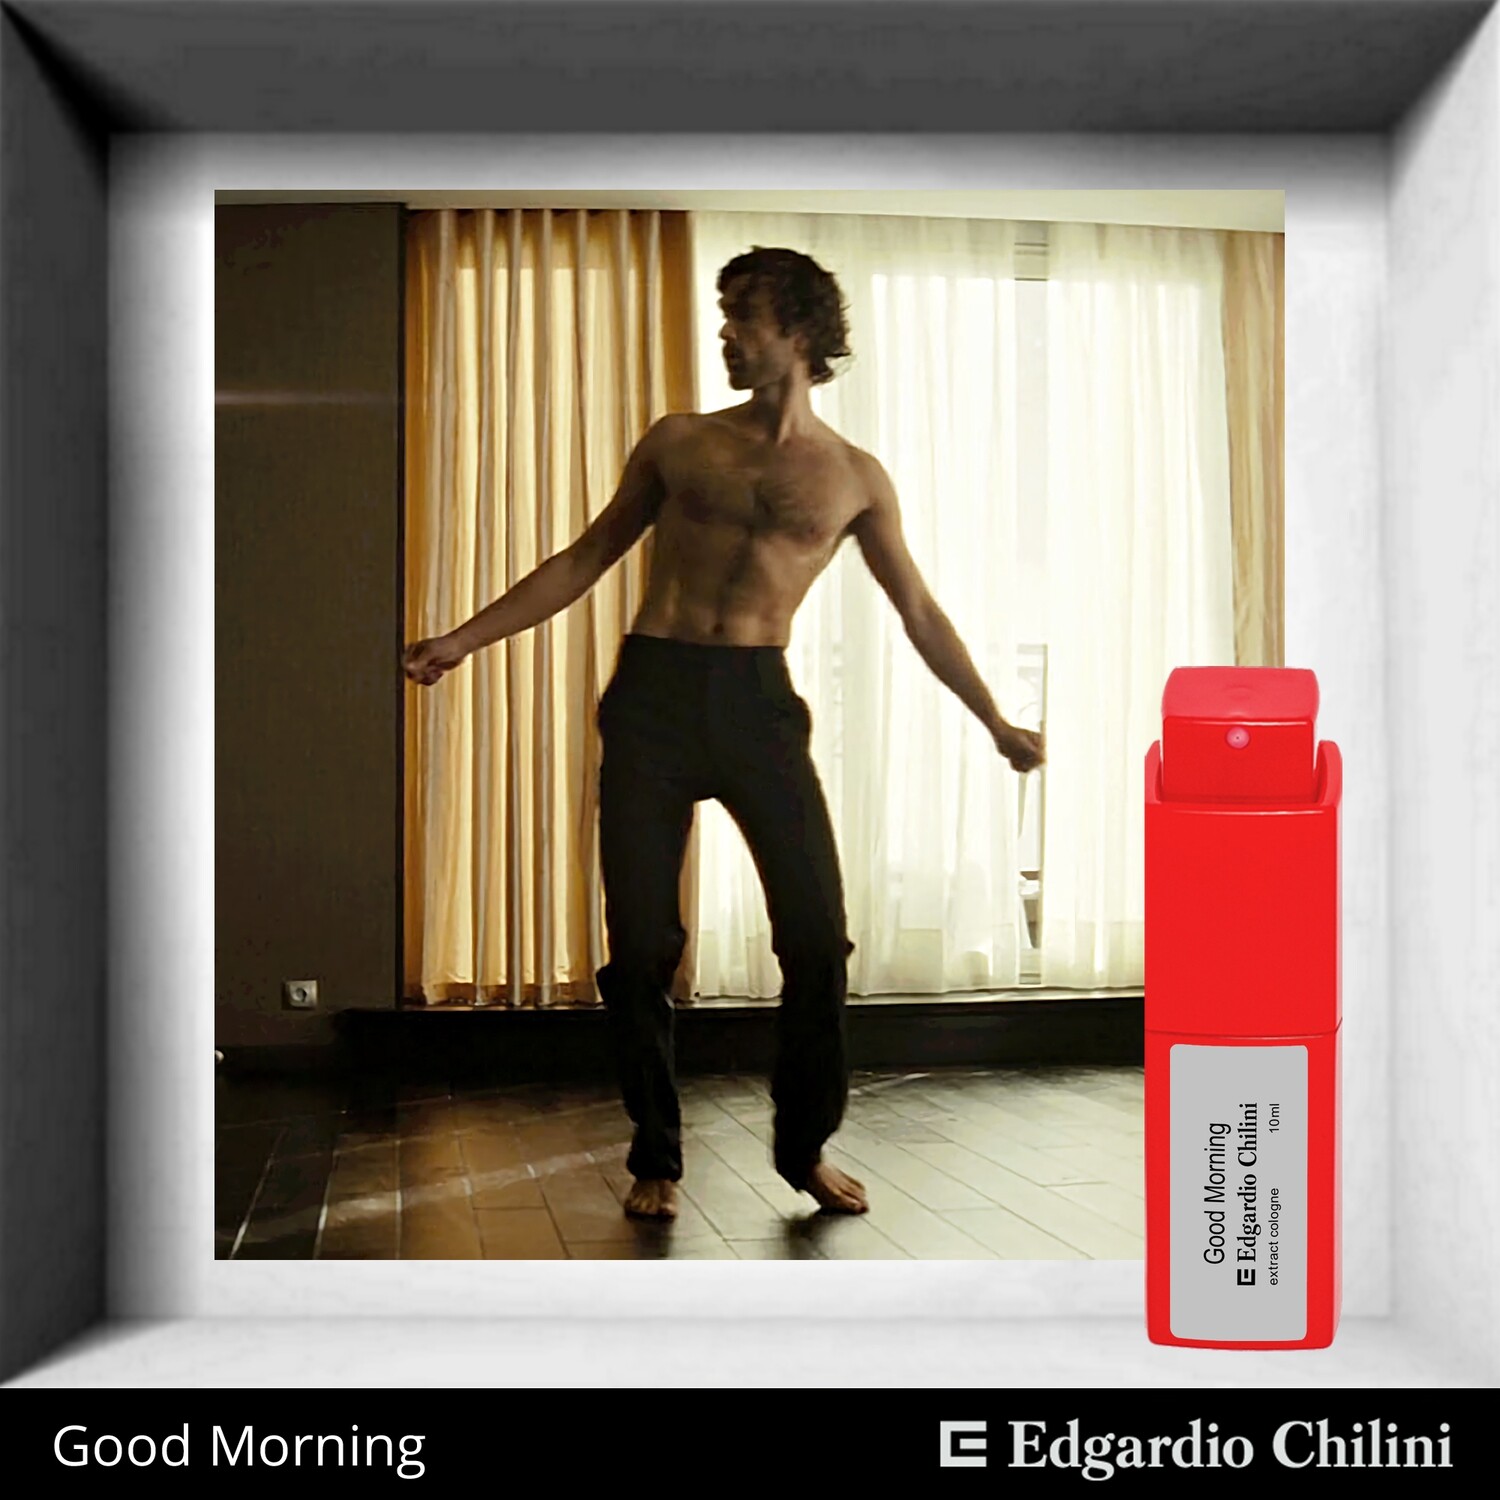 Edgardio Chilini, Good Morning, an invigorating citrus fragrance